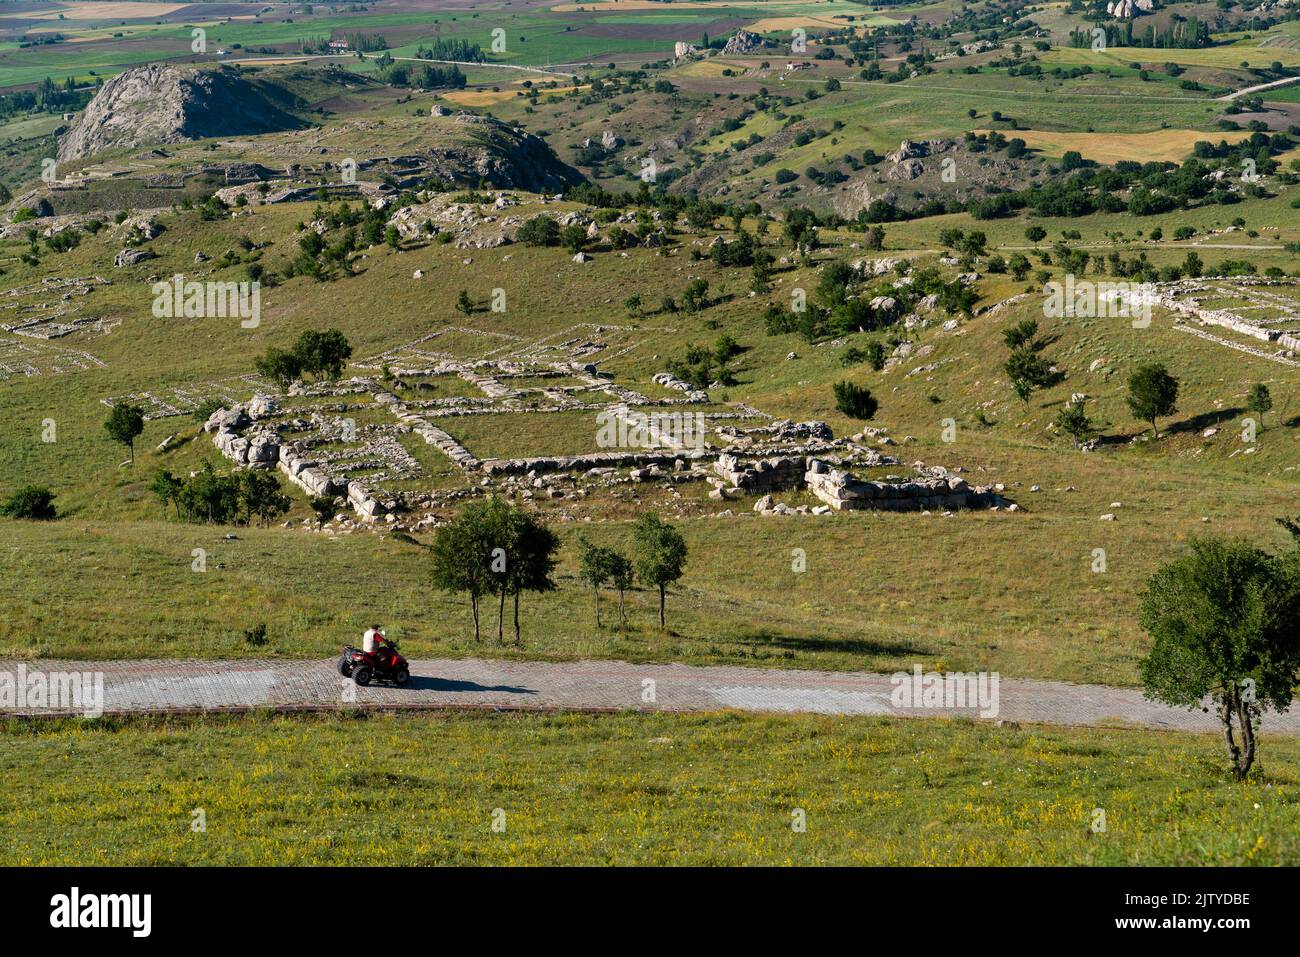 Vista generale di Hattusa era la capitale dell'Impero ittita con alcune strutture in pietra. Corum, Turchia. Foto Stock